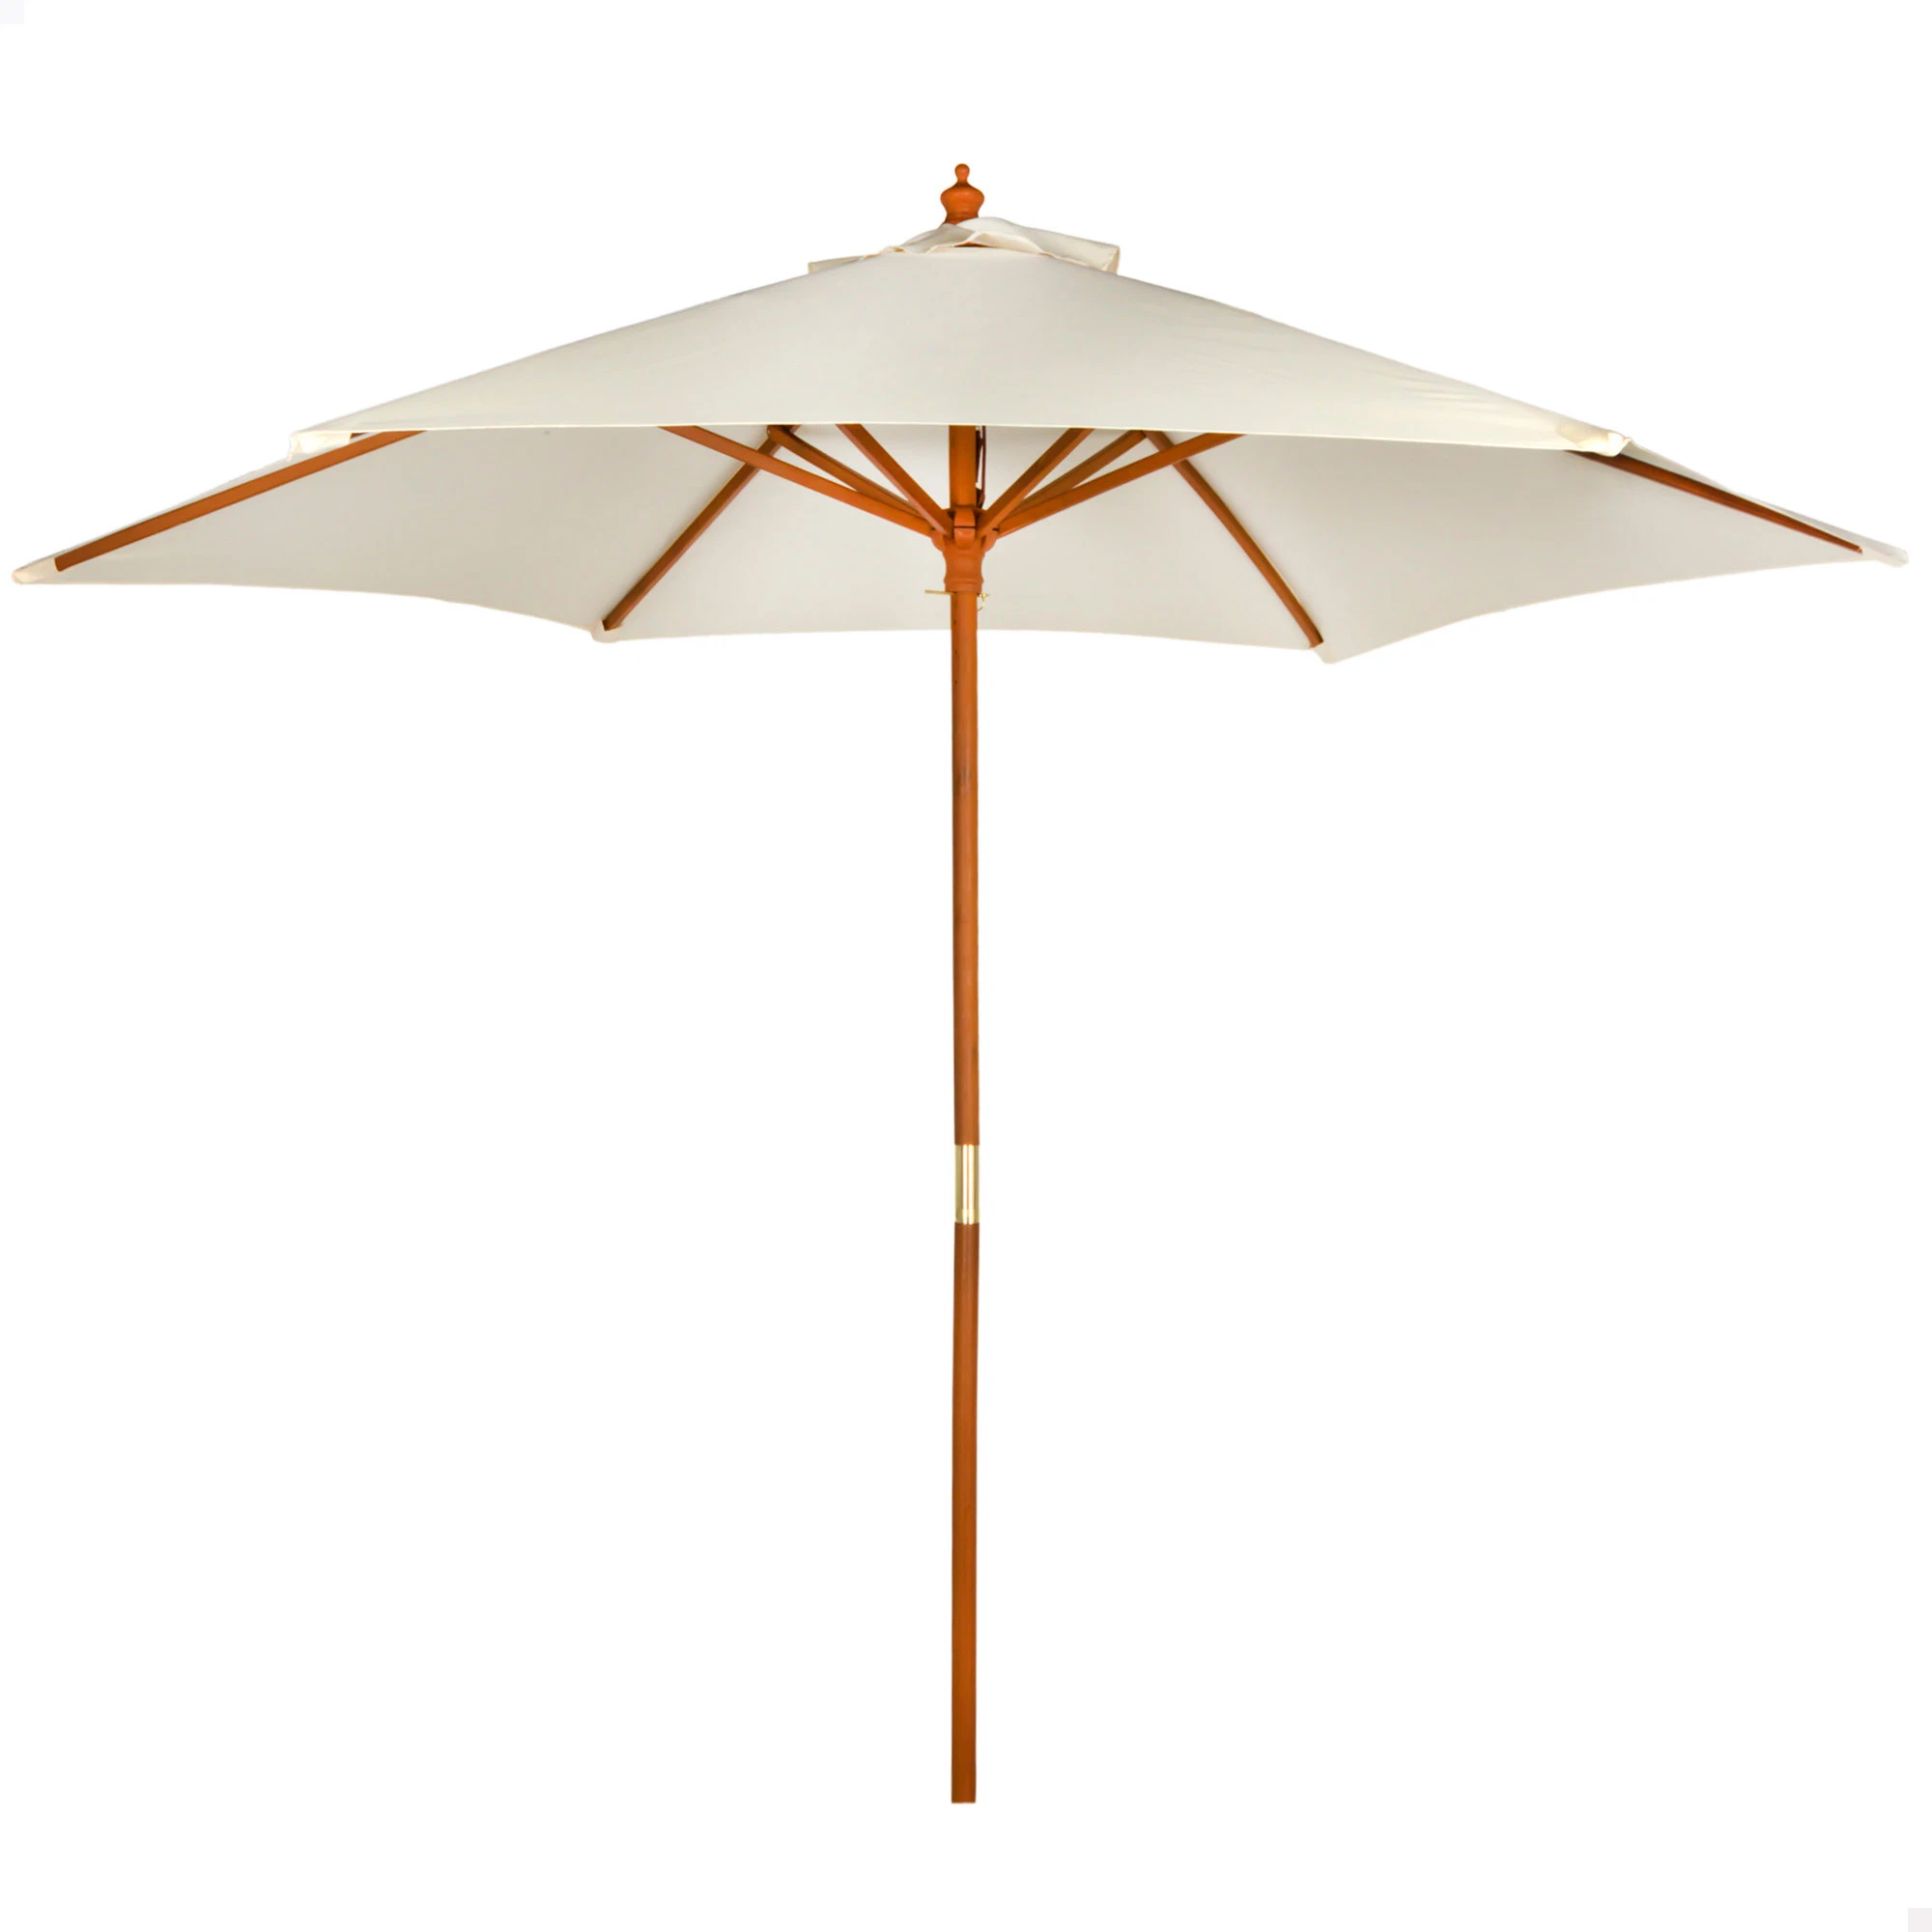 Parasol Aktive Garden D270cm Wooden Mast, Sun Terrace Umbrella, Garden Umbrella, Patio Umbrellas, Sun Garden Umbrellas, Large Sun Umbrellas, Sun Umbrellas - Patio Umbrellas & Bases - AliExpress